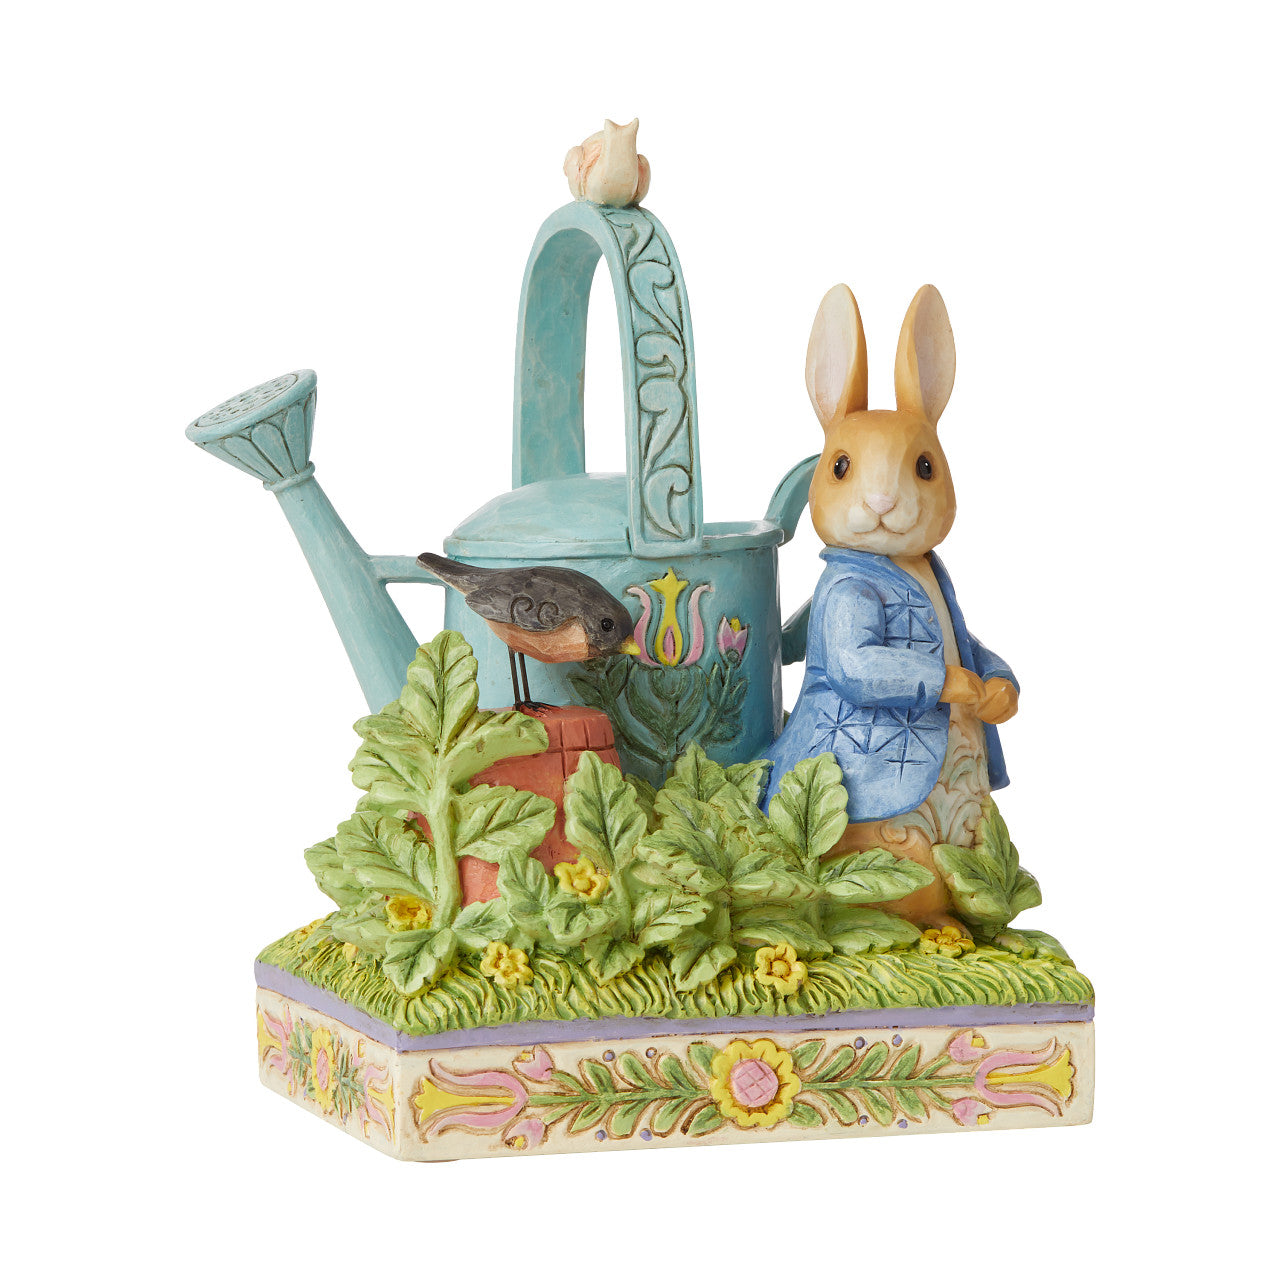 Peter Rabbit - caught in garden